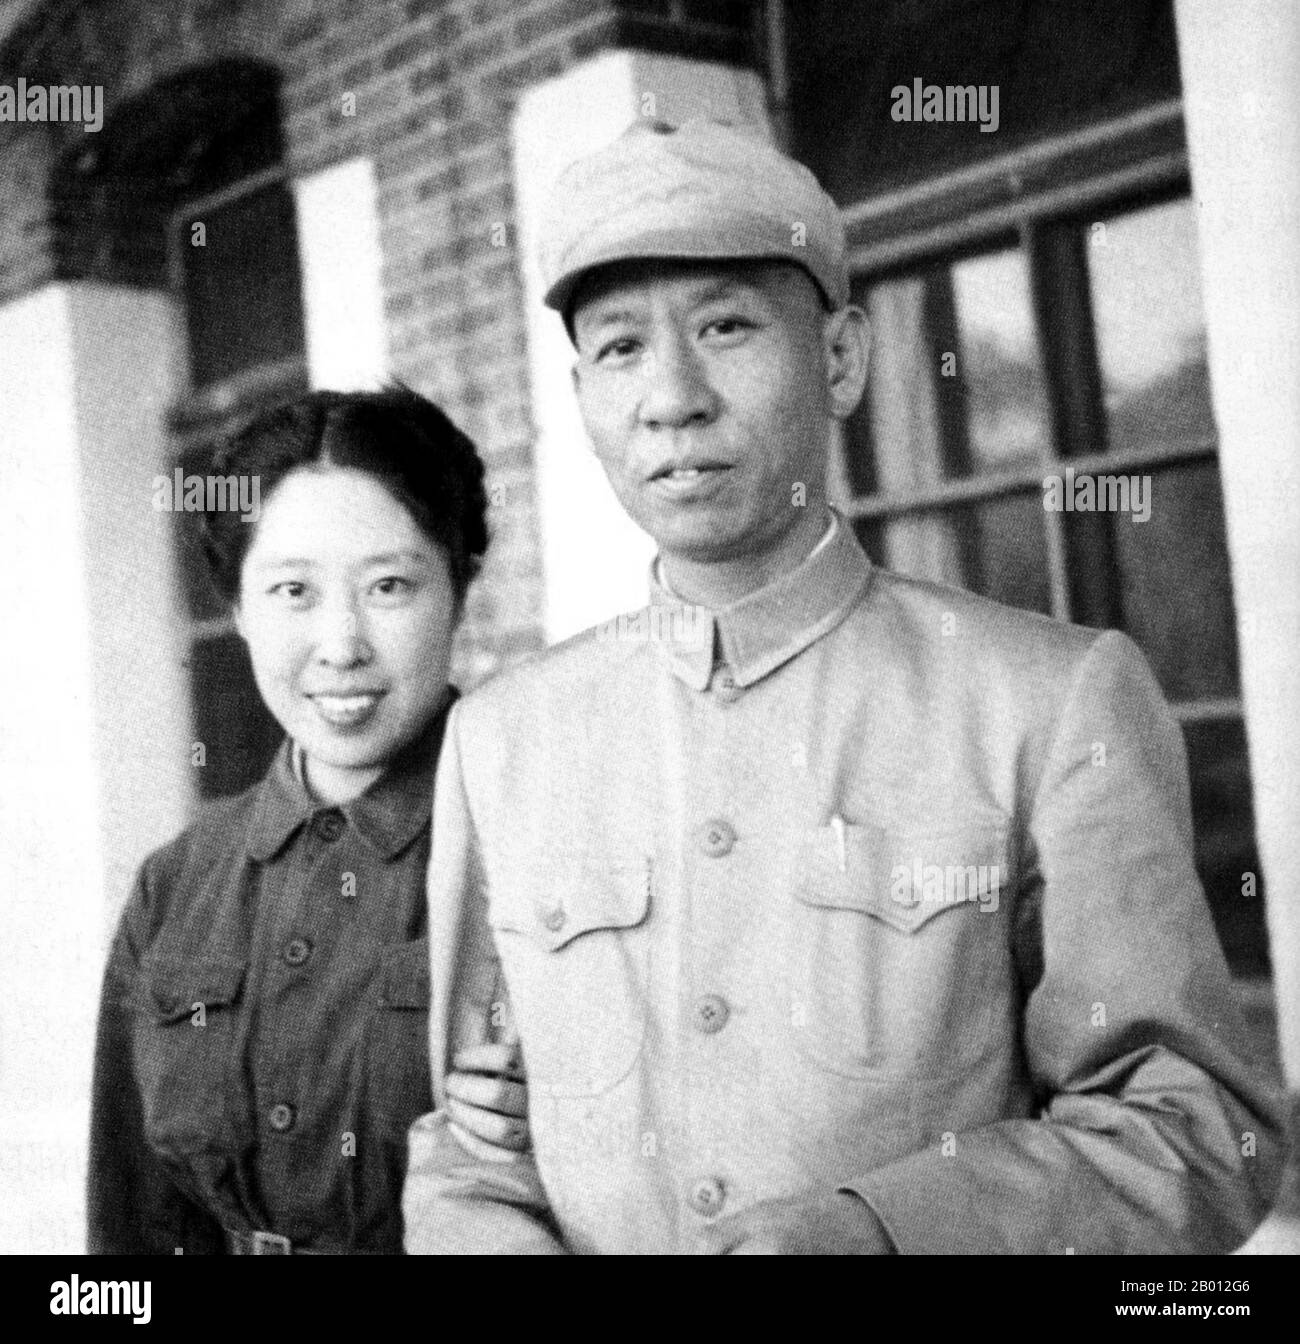 Chine : Liu Shaoqi avec son épouse Wang Guangmei, c. 1949. Liu Shaoqi (Liu Shao-ch'i, 24 novembre 1898 – 12 novembre 1969) était un révolutionnaire, un homme d'État et un théoricien chinois. Il a été Président de la République populaire de Chine, chef d'État chinois, du 27 avril 1959 au 31 octobre 1968, au cours de laquelle il a mis en œuvre des politiques de reconstruction économique en Chine. Il est tombé en déroute vers la fin des années 1960 pendant la Révolution culturelle à cause de ses points de vue « de droite » et, on le théorise, parce que Mao considérait Liu comme une menace pour son pouvoir. Il a été torturé à mort en 1969. Banque D'Images